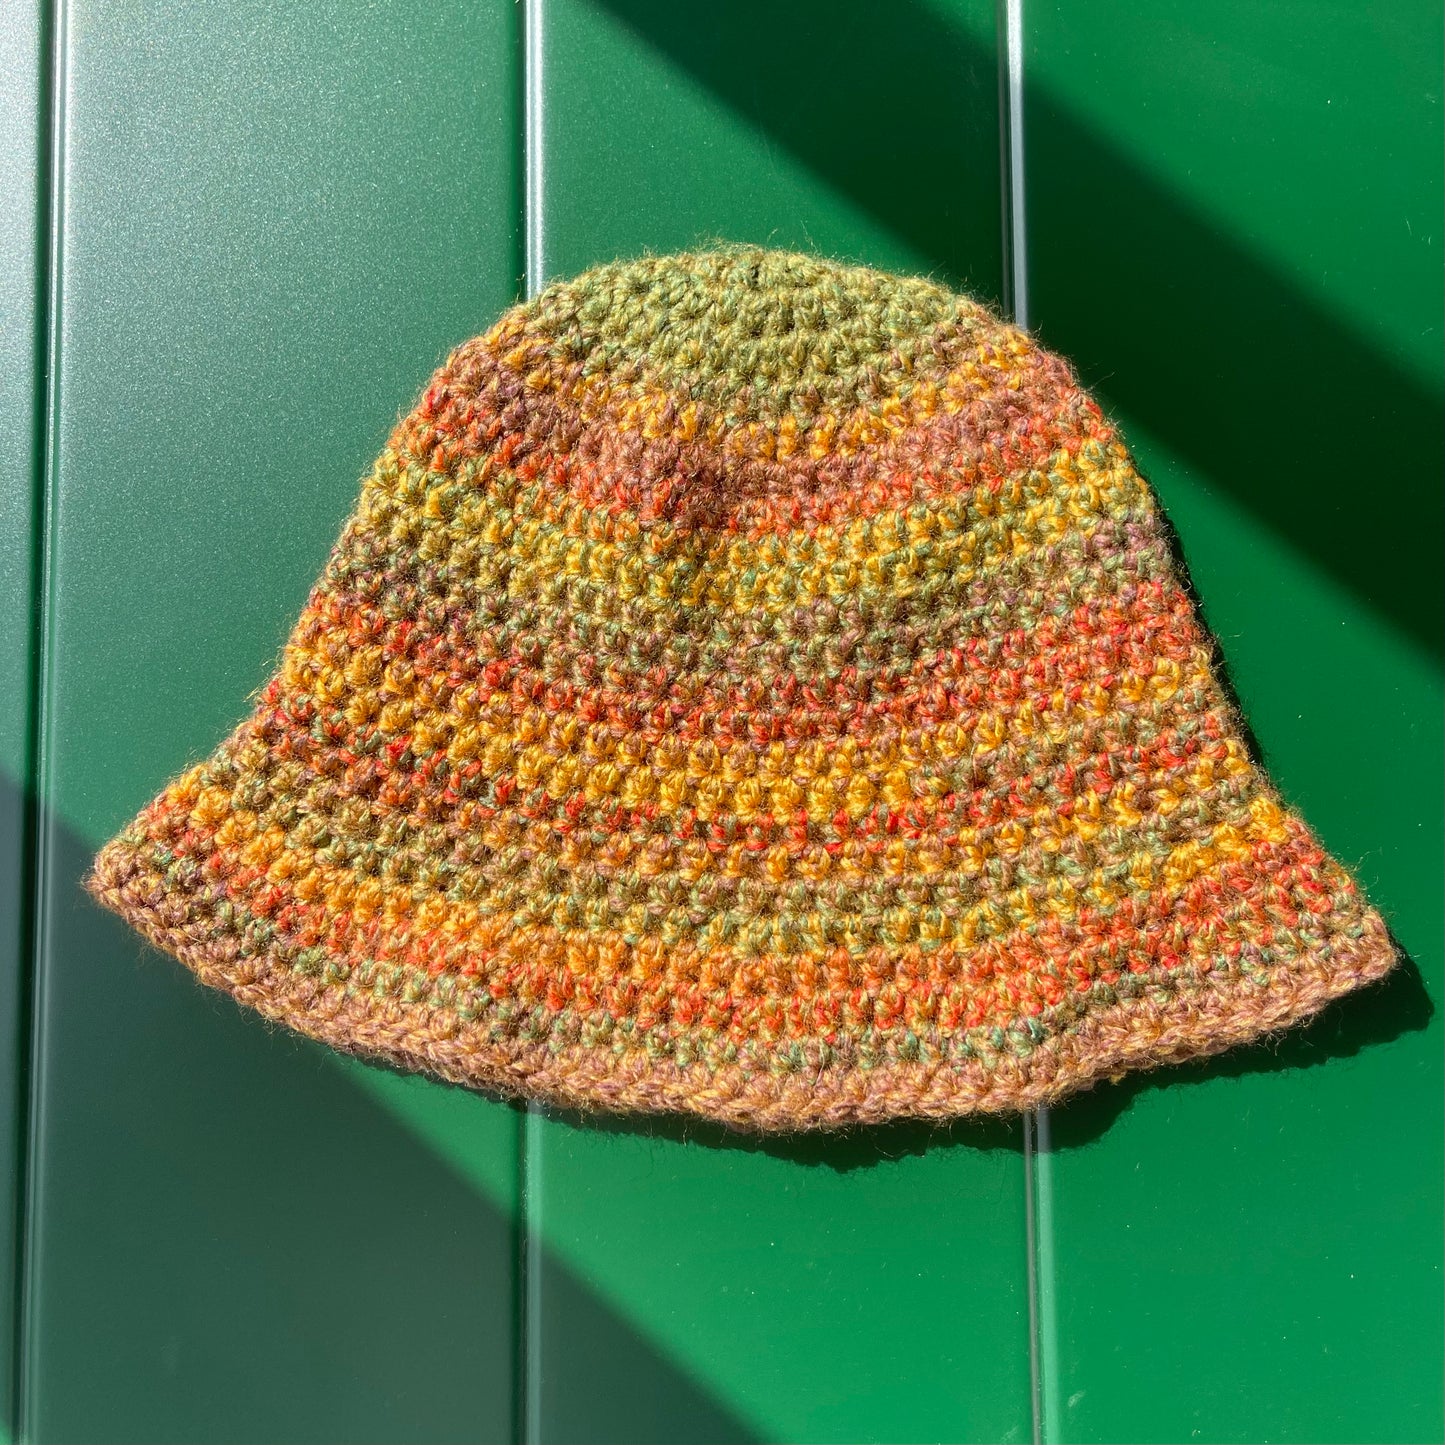 Handmade crochet bucket hat in earth tones colourway